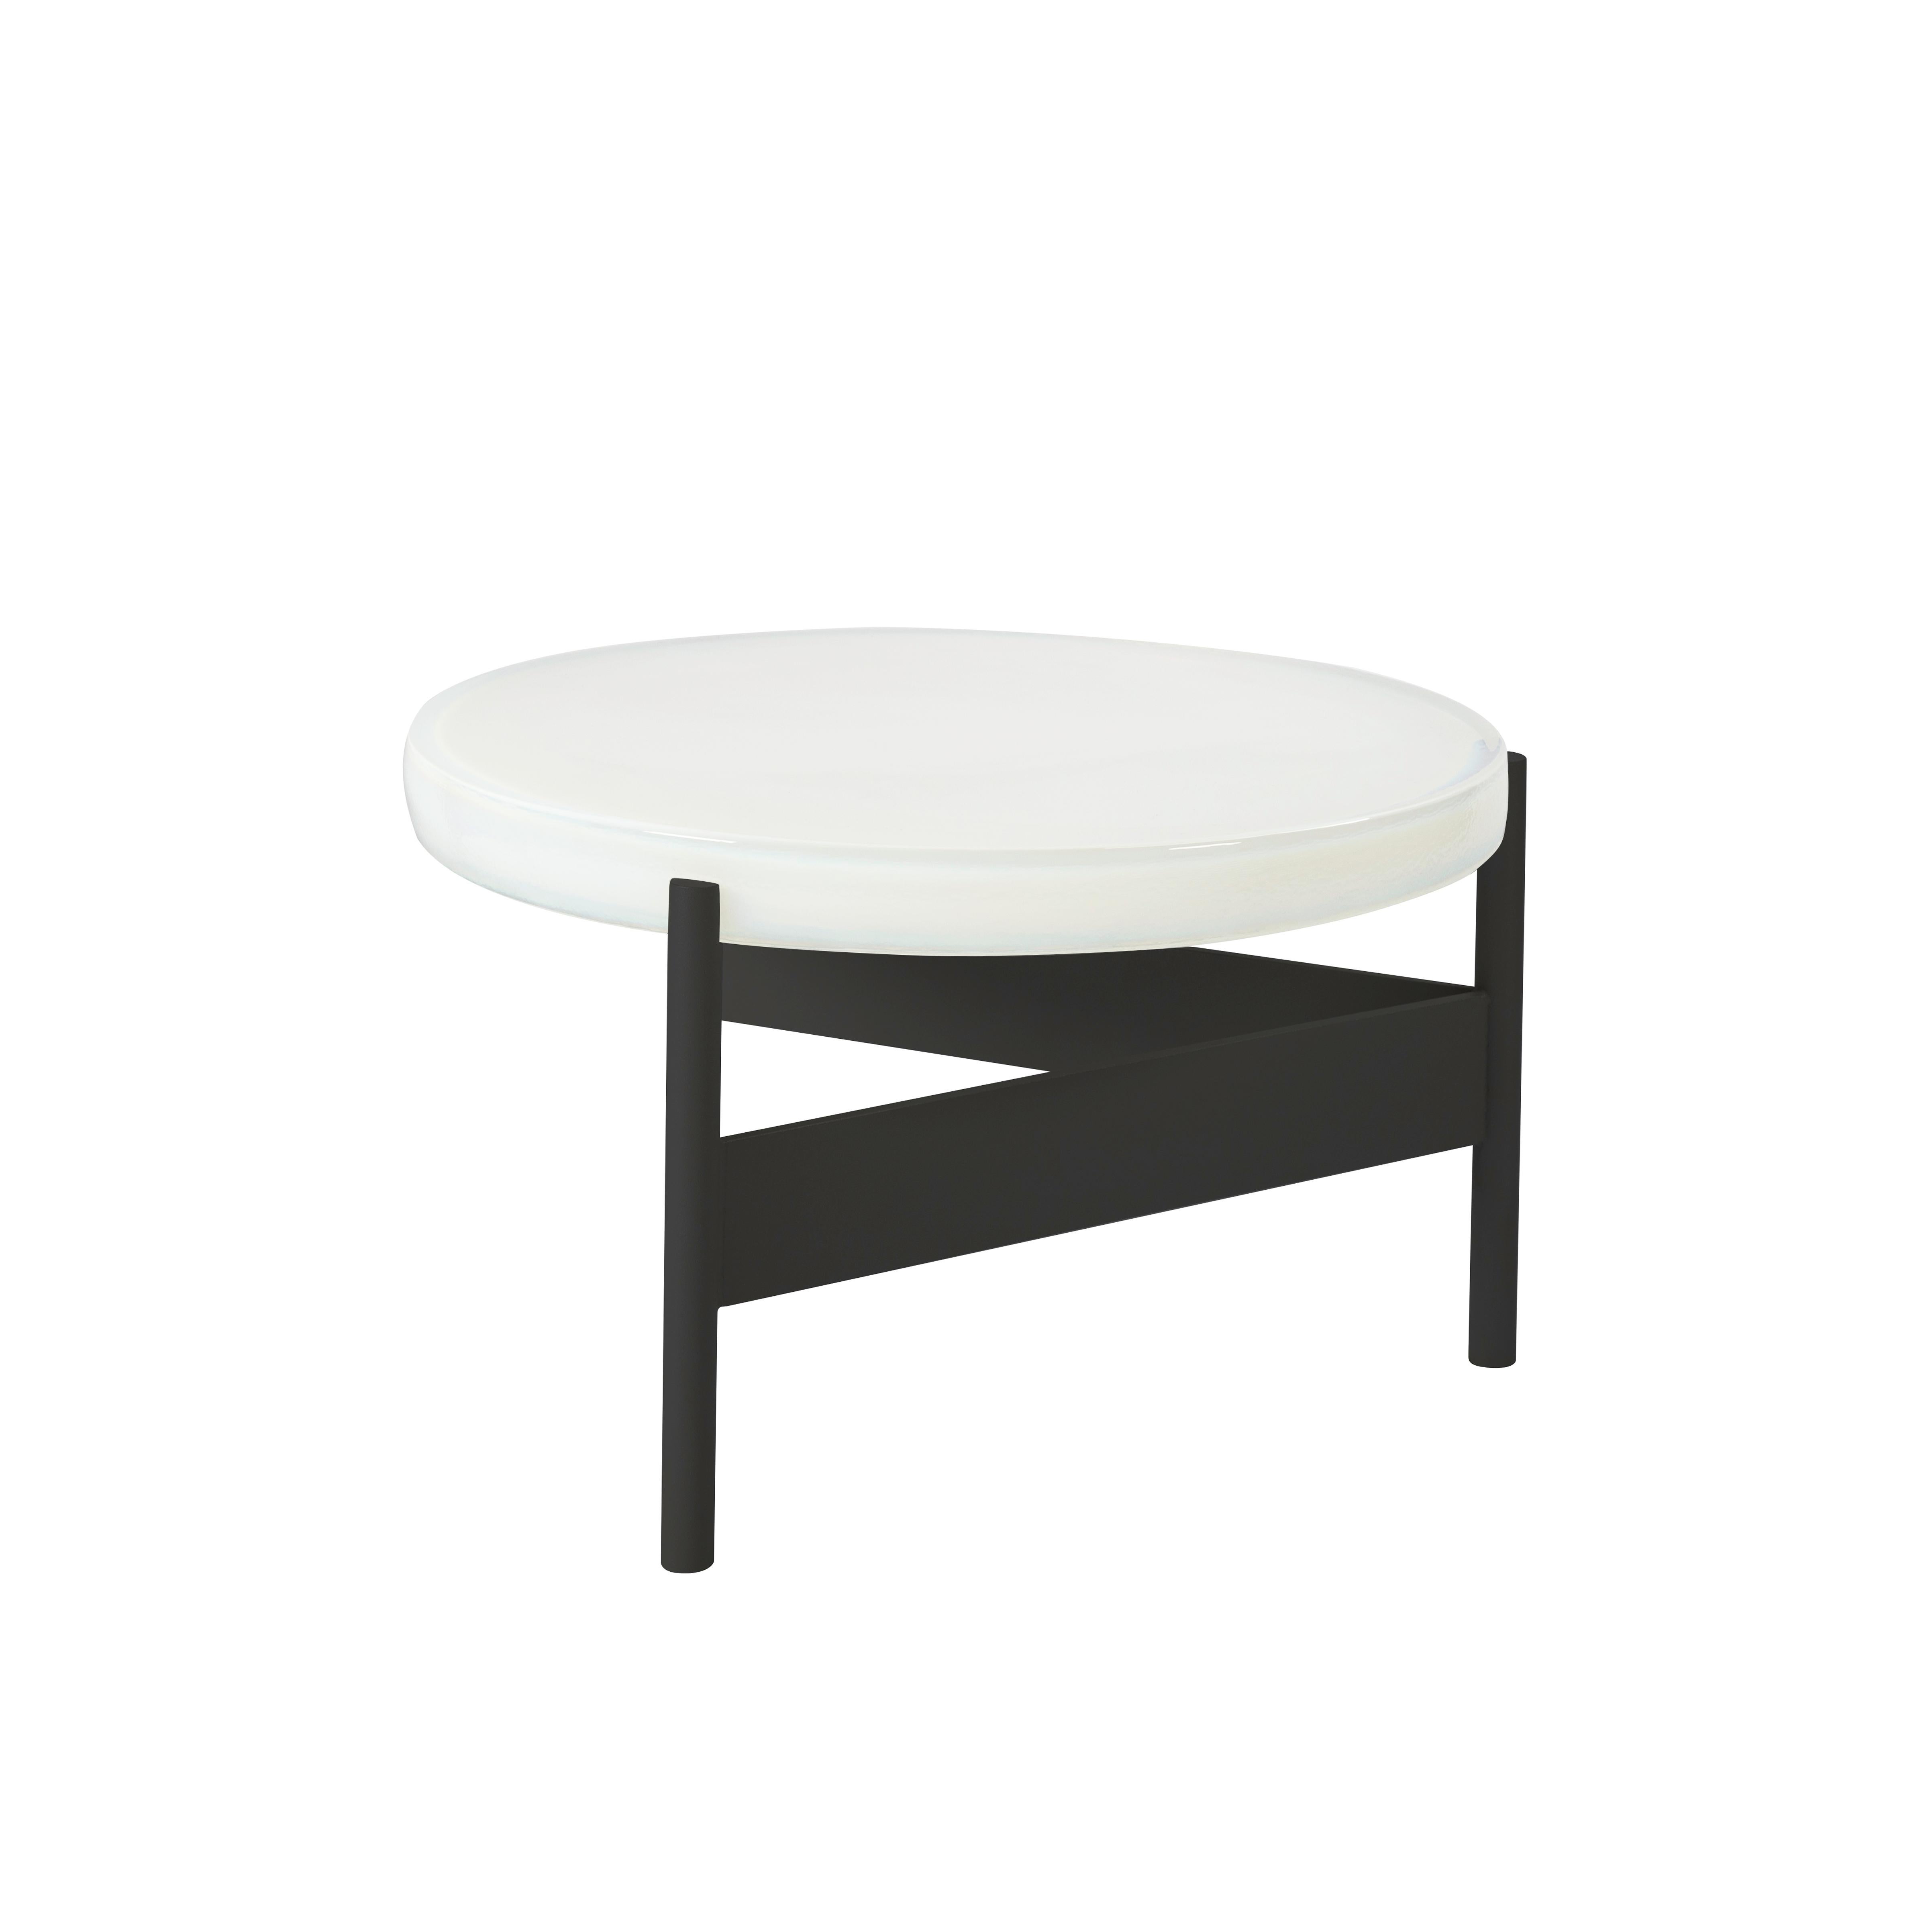 Table basse Alwa deux grandes, blanche et noire par Pulpo.
Dimensions : D56 x H35 cm.
Coates : verre moulé ; acier peint par poudrage.

Disponible également en différentes finitions.

Normalement, le verre est considéré comme un matériau léger aux